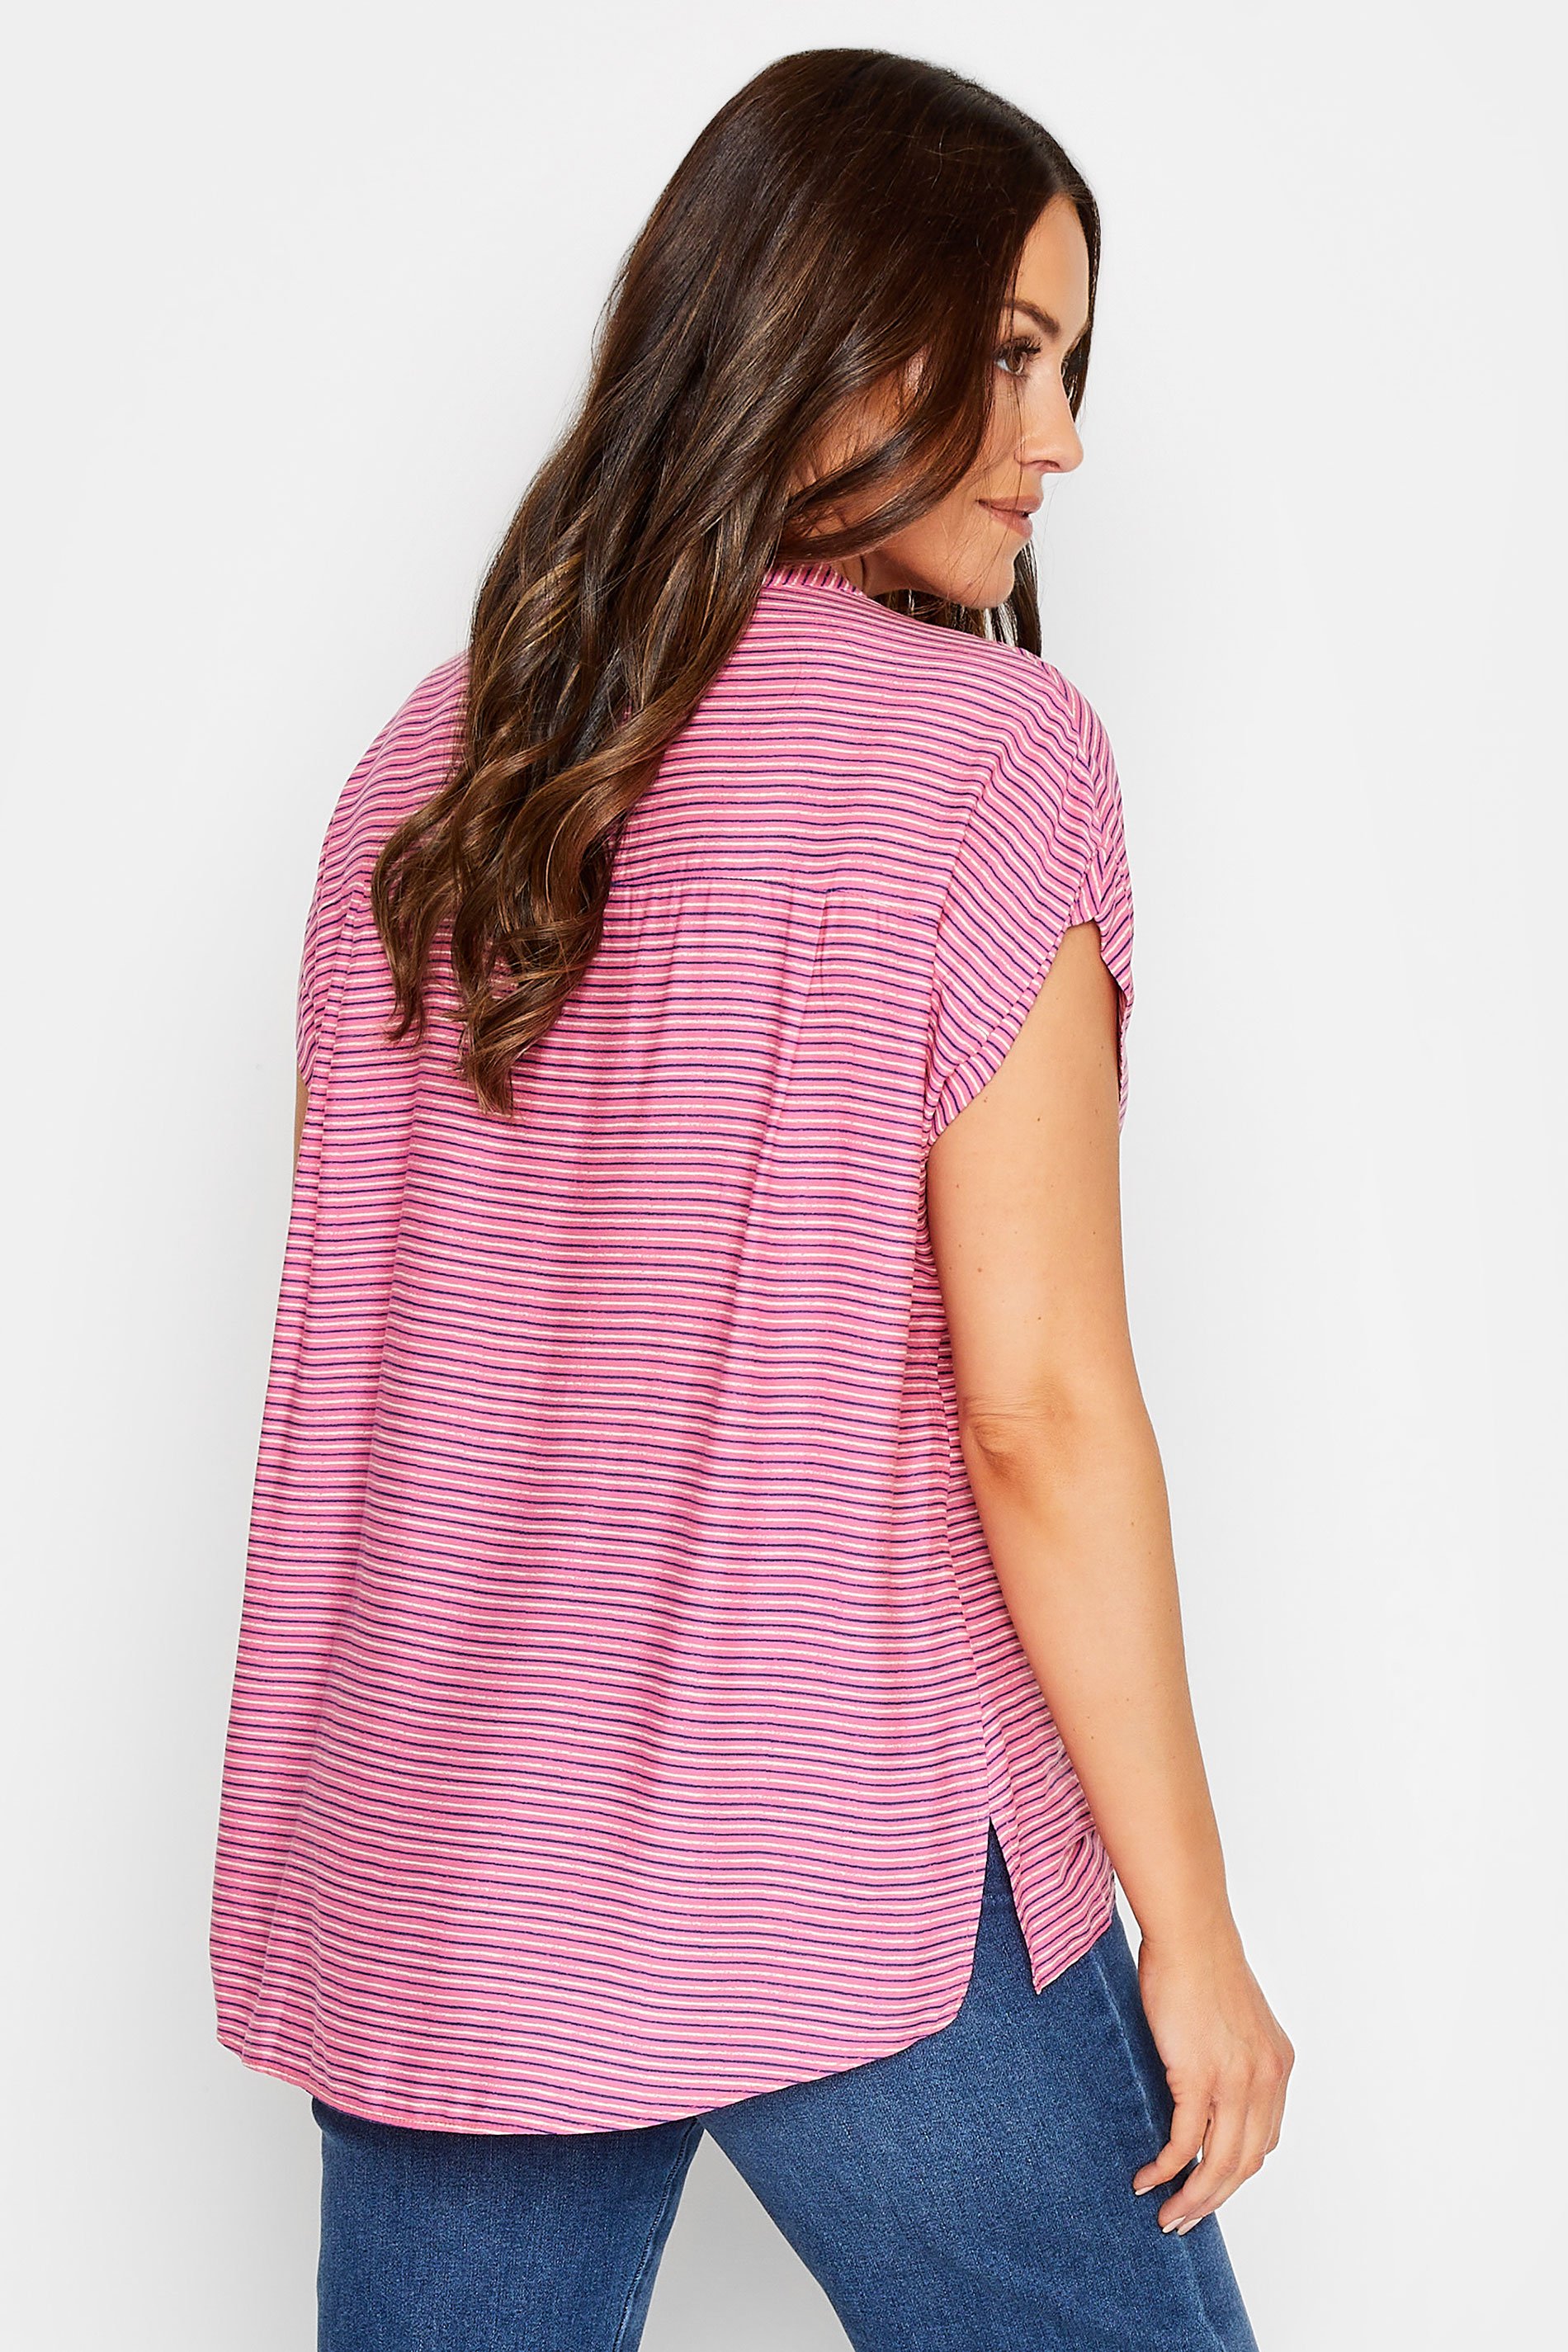 M&Co Women's Pink Stripe Grown On Sleeve Top | M&Co 3